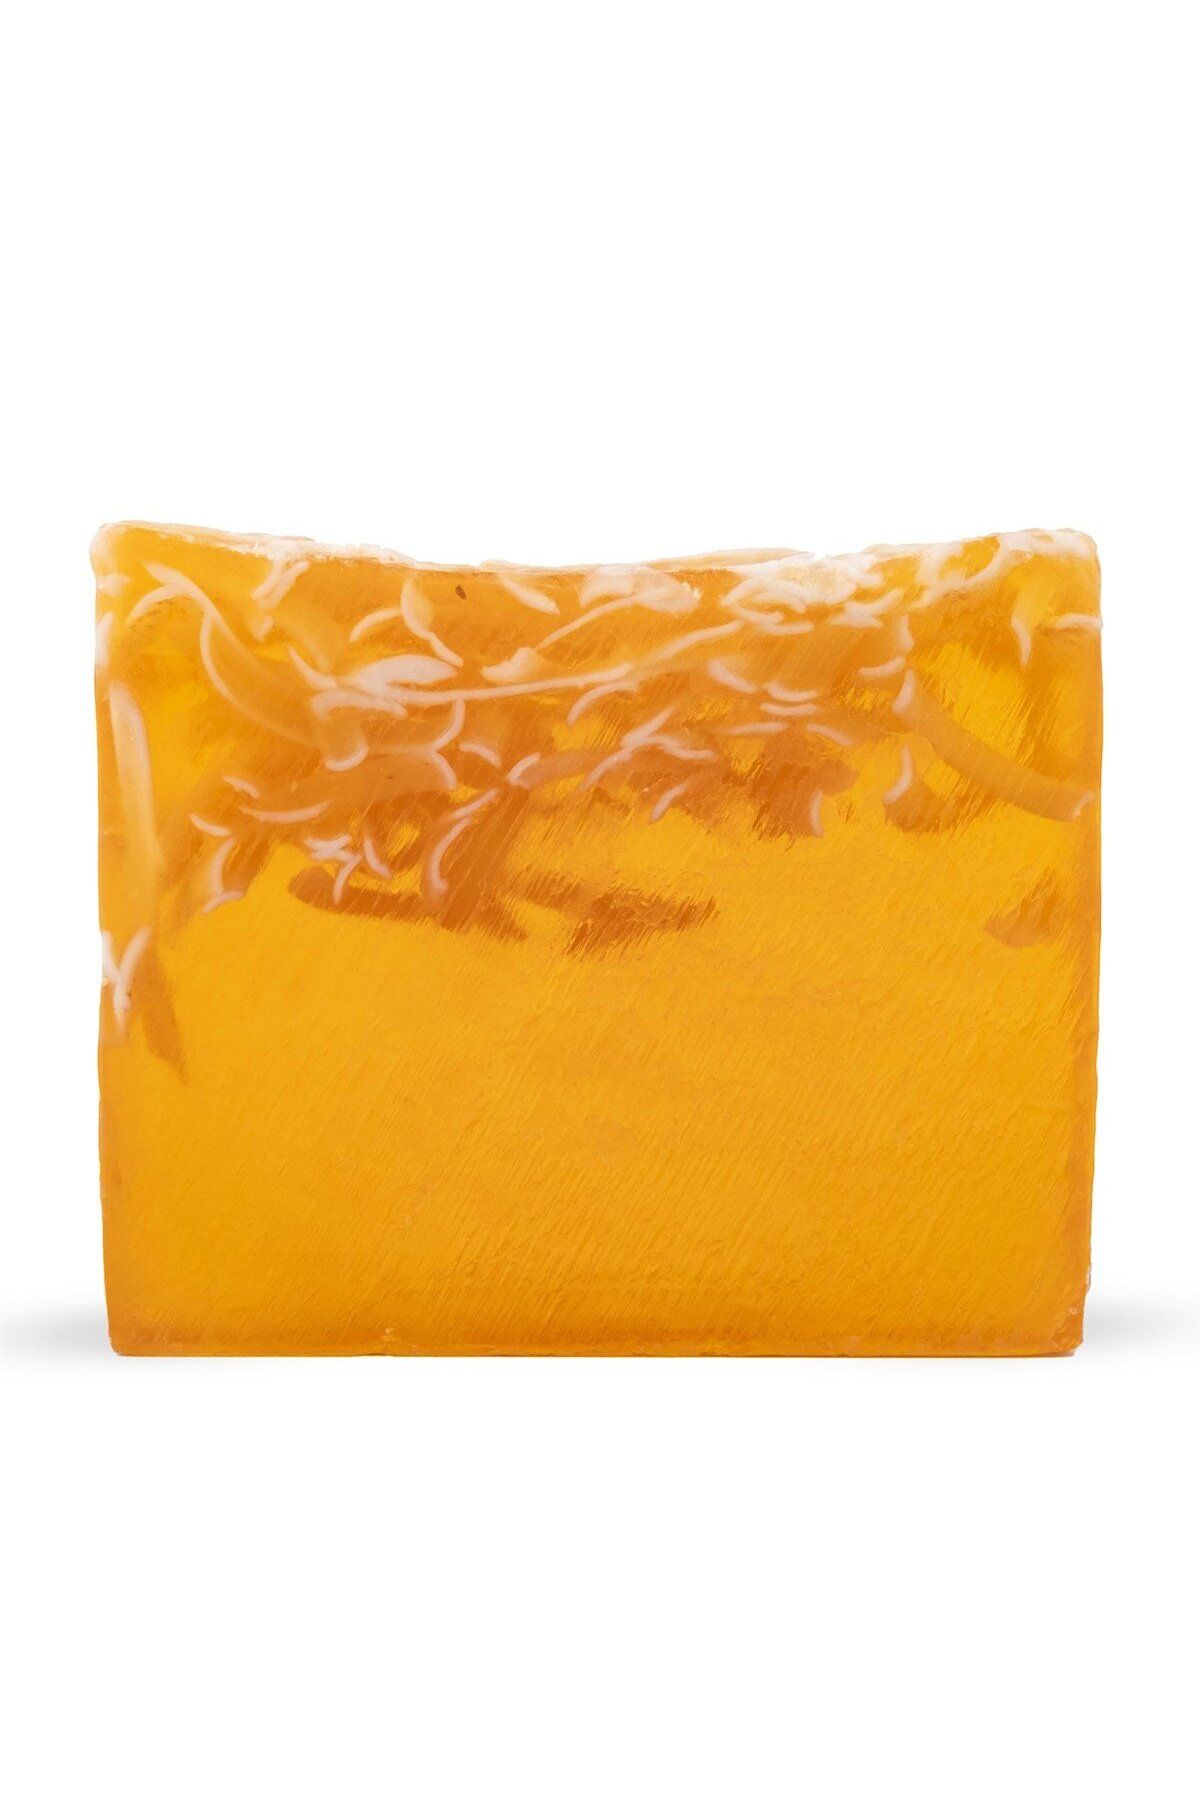 Zeynep Büyükbay Doğadan Gelen Sıcaklık Ve Ferahlık: 120 gr Doğal Miski Amber Sabunu